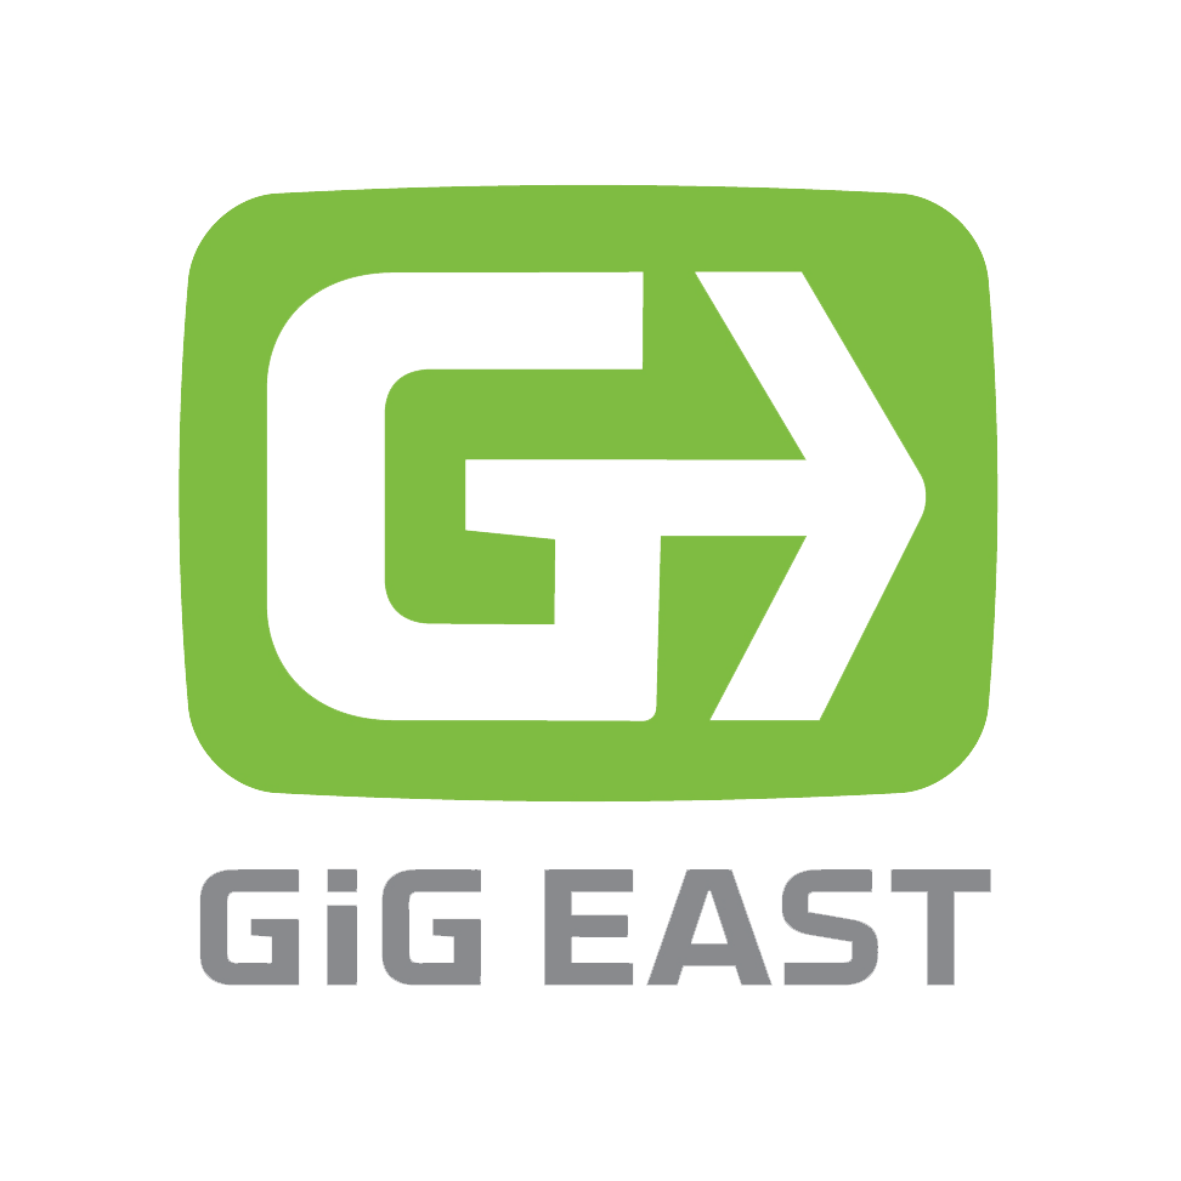 WRAL TechWire Sponsor Logos Gigeast